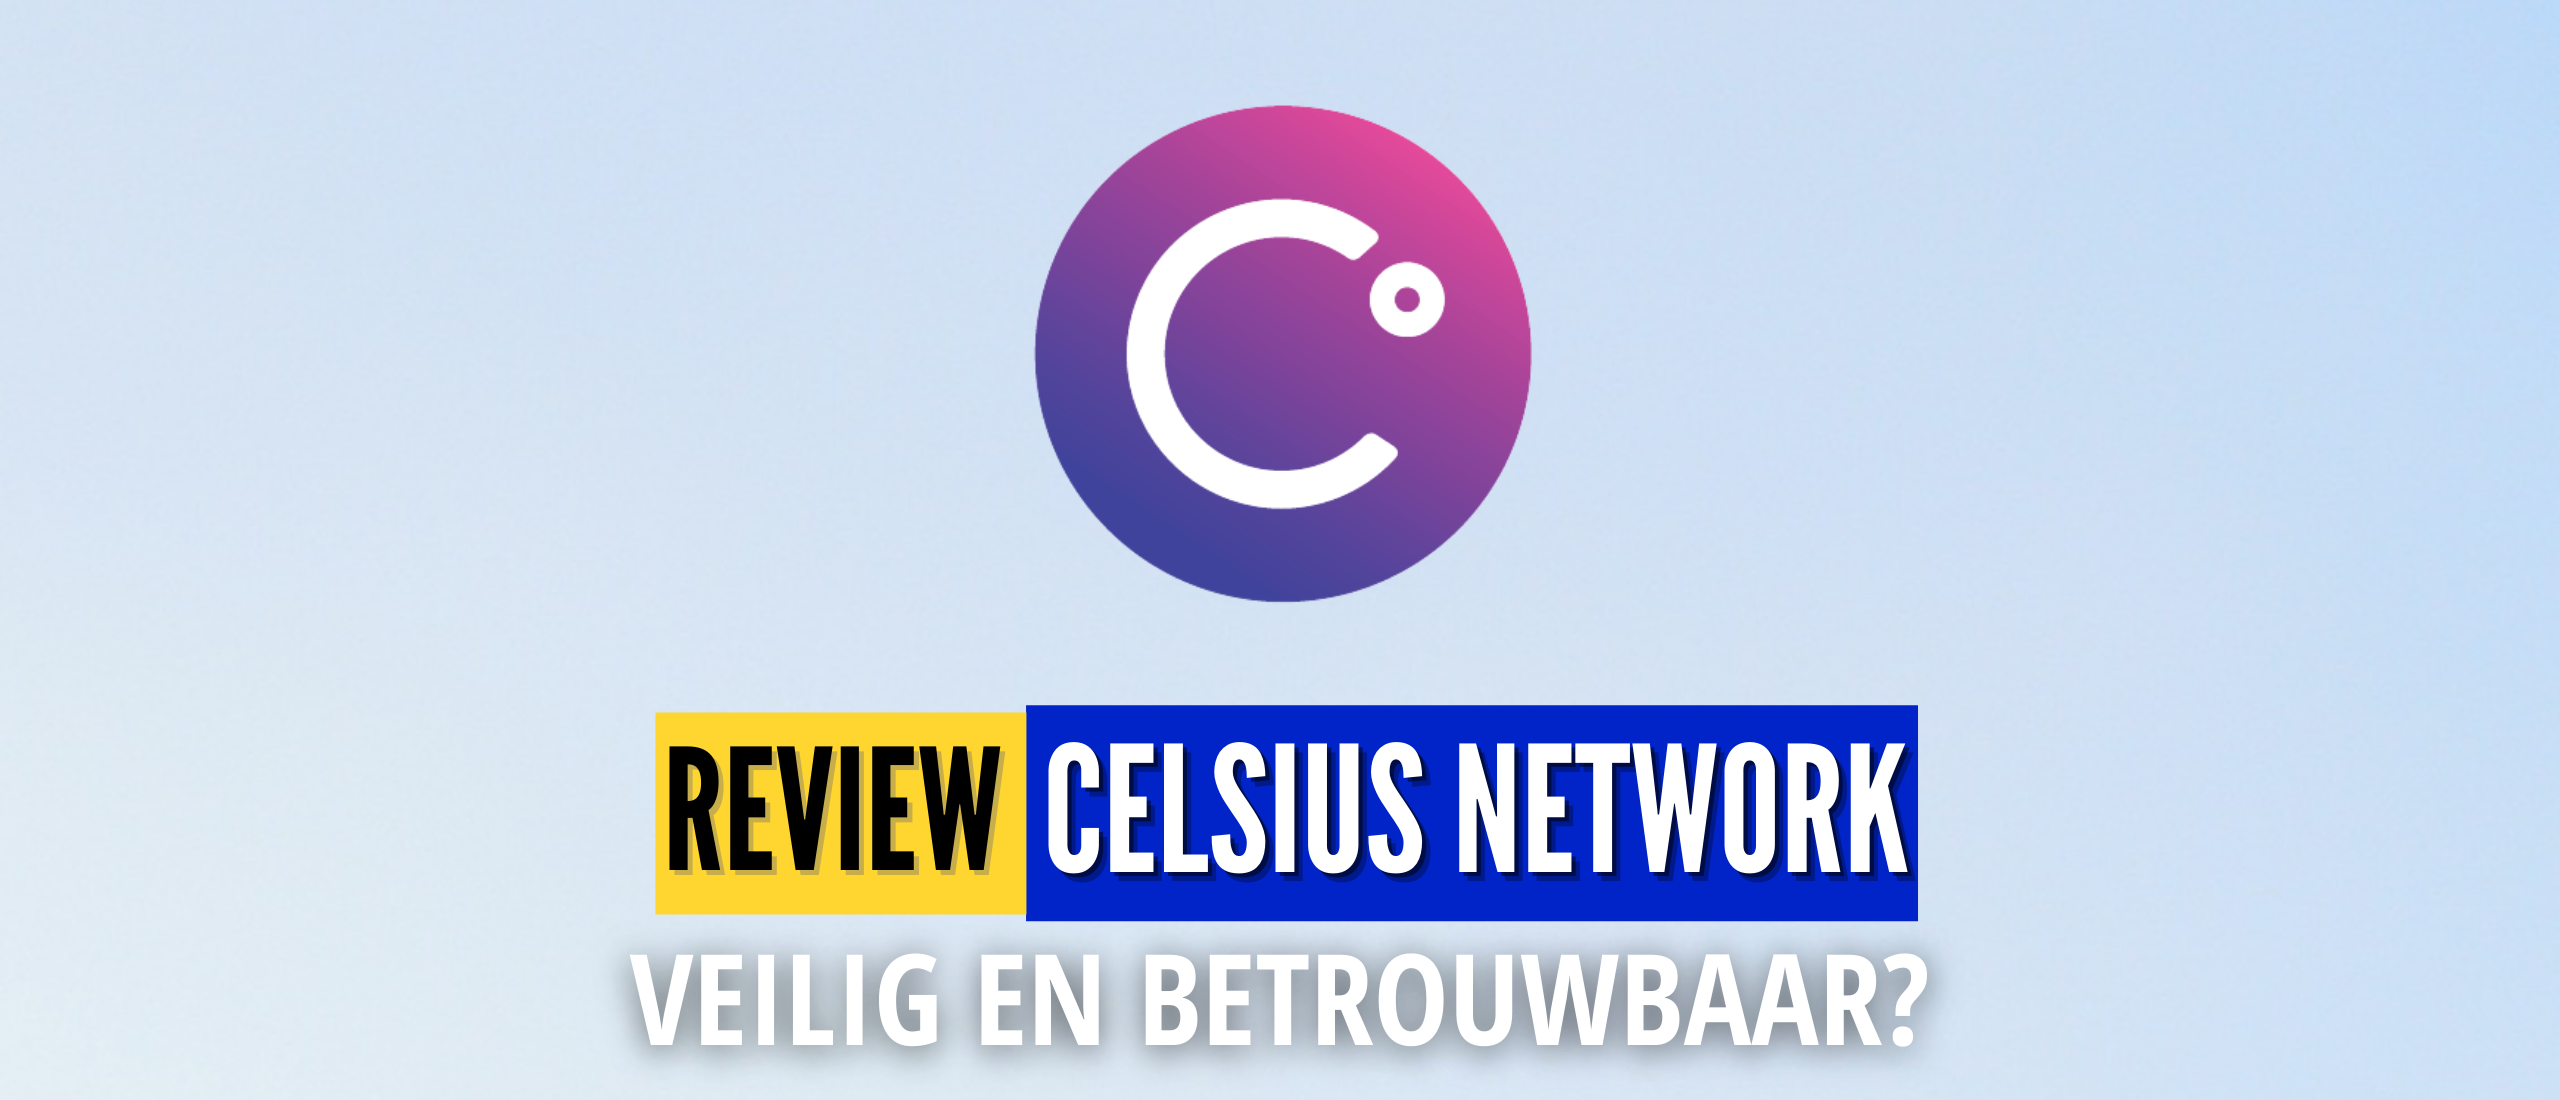 Celsius Network Review – Betrouwbaar of Piramidespel?